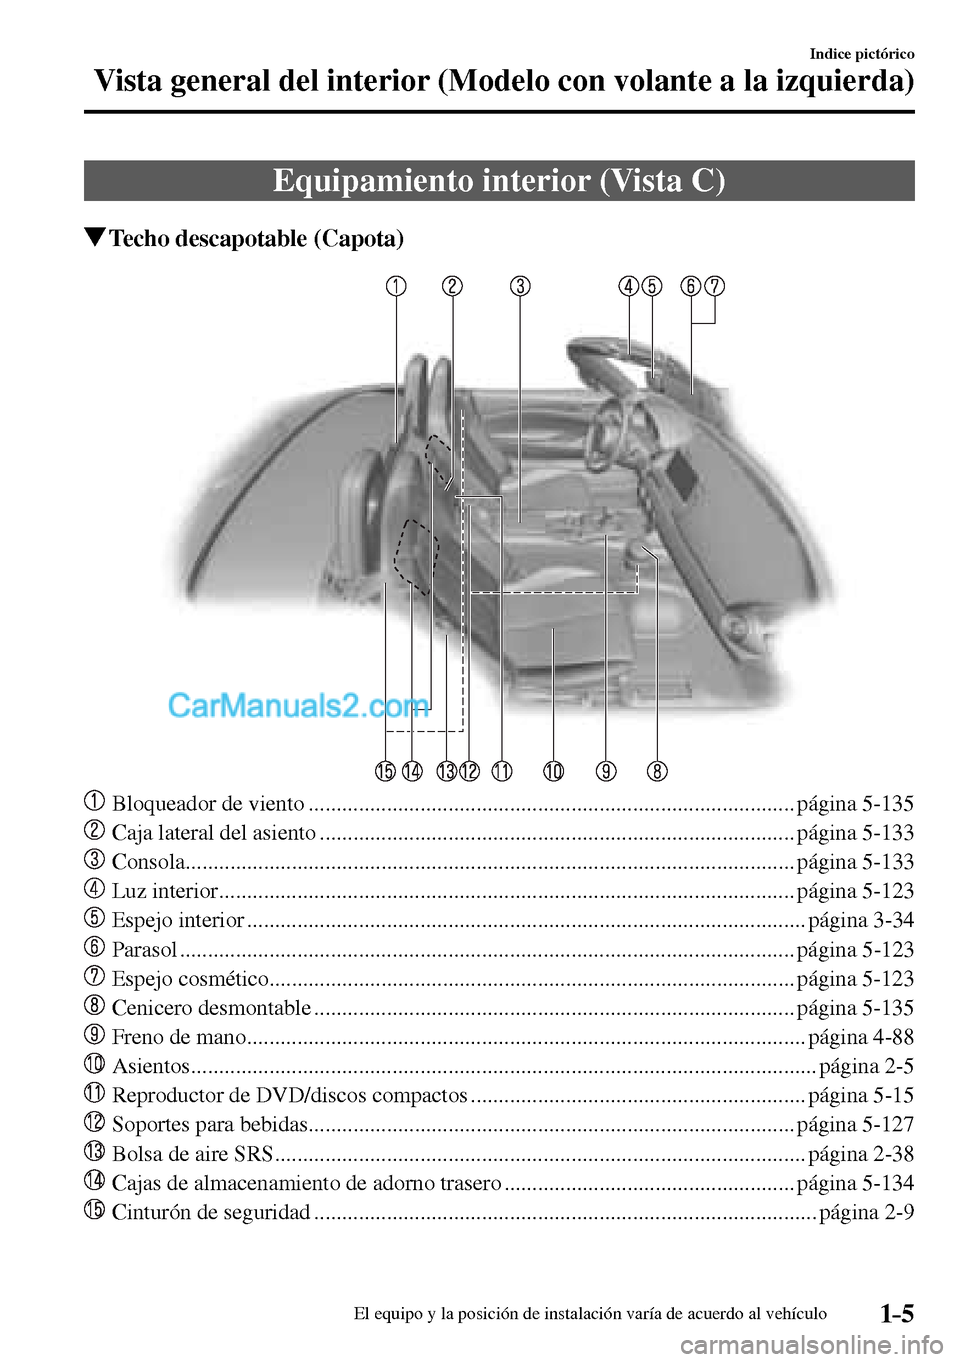 MAZDA MODEL MX-5 RF 2017  Manual del propietario (in Spanish) 1–5
Indice pictórico
Vista general del interior (Modelo con volante a la izquierda)
 Equipamiento interior (Vista C)
 Techo descapotable (Capota)
     Bloqueador de viento .........................